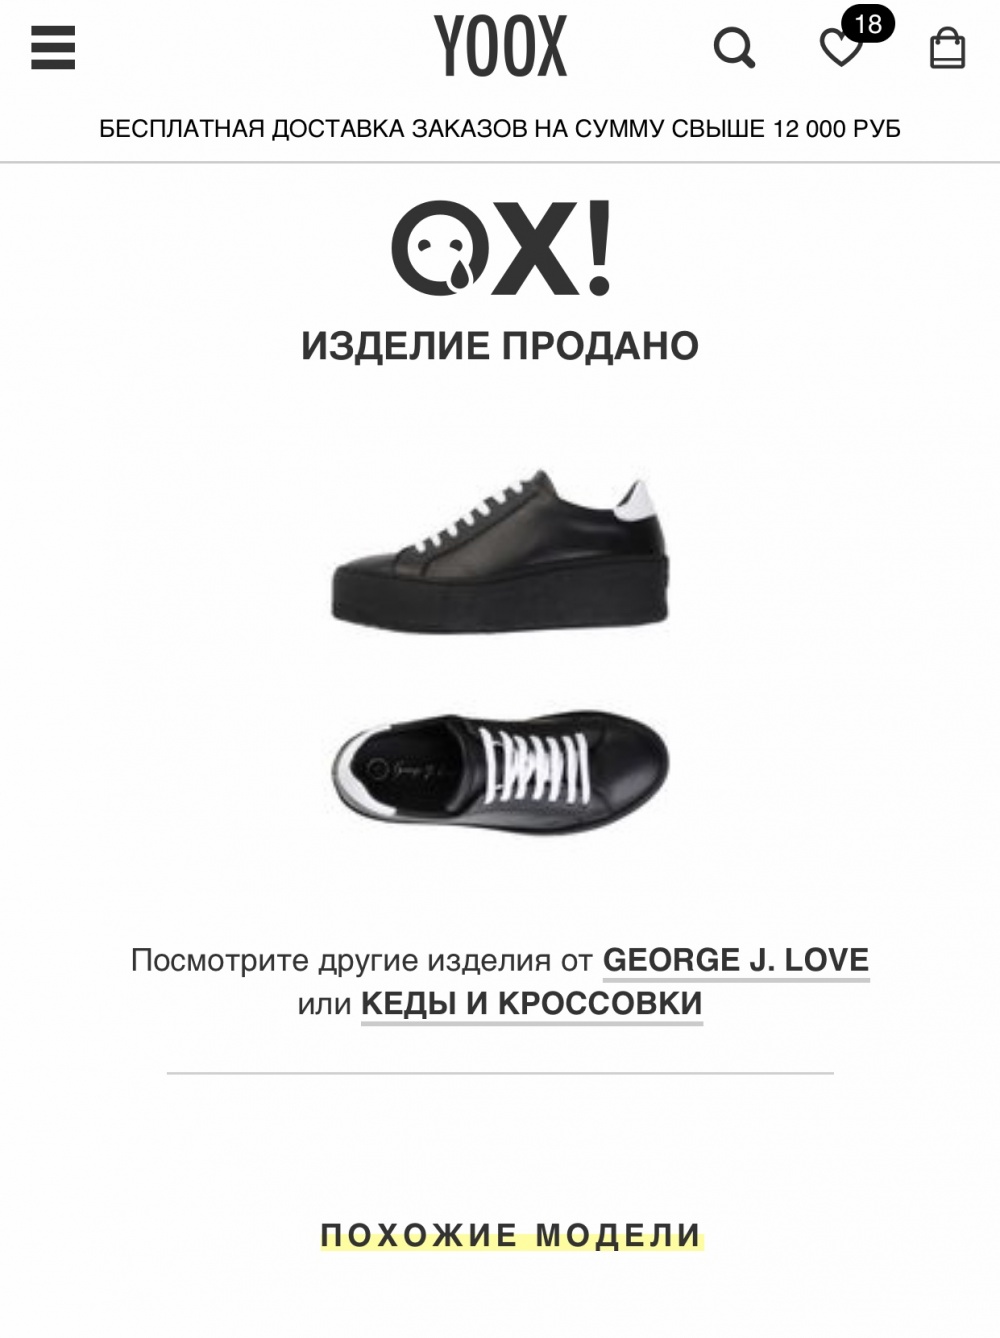 Новые кроссовки Goerge j love, размер 39-40